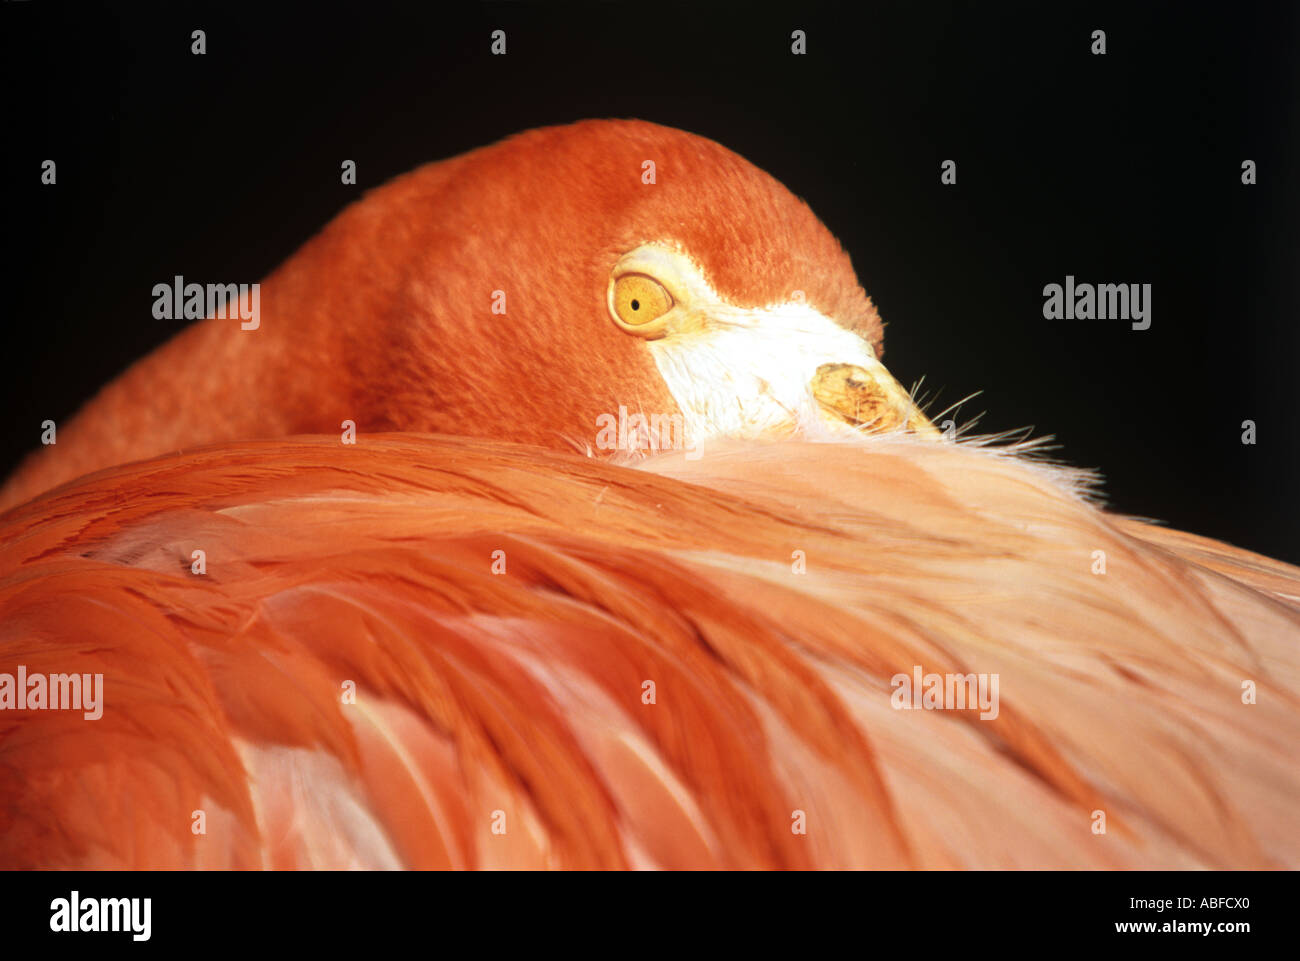 Flamingo Portrait. Stock Photo